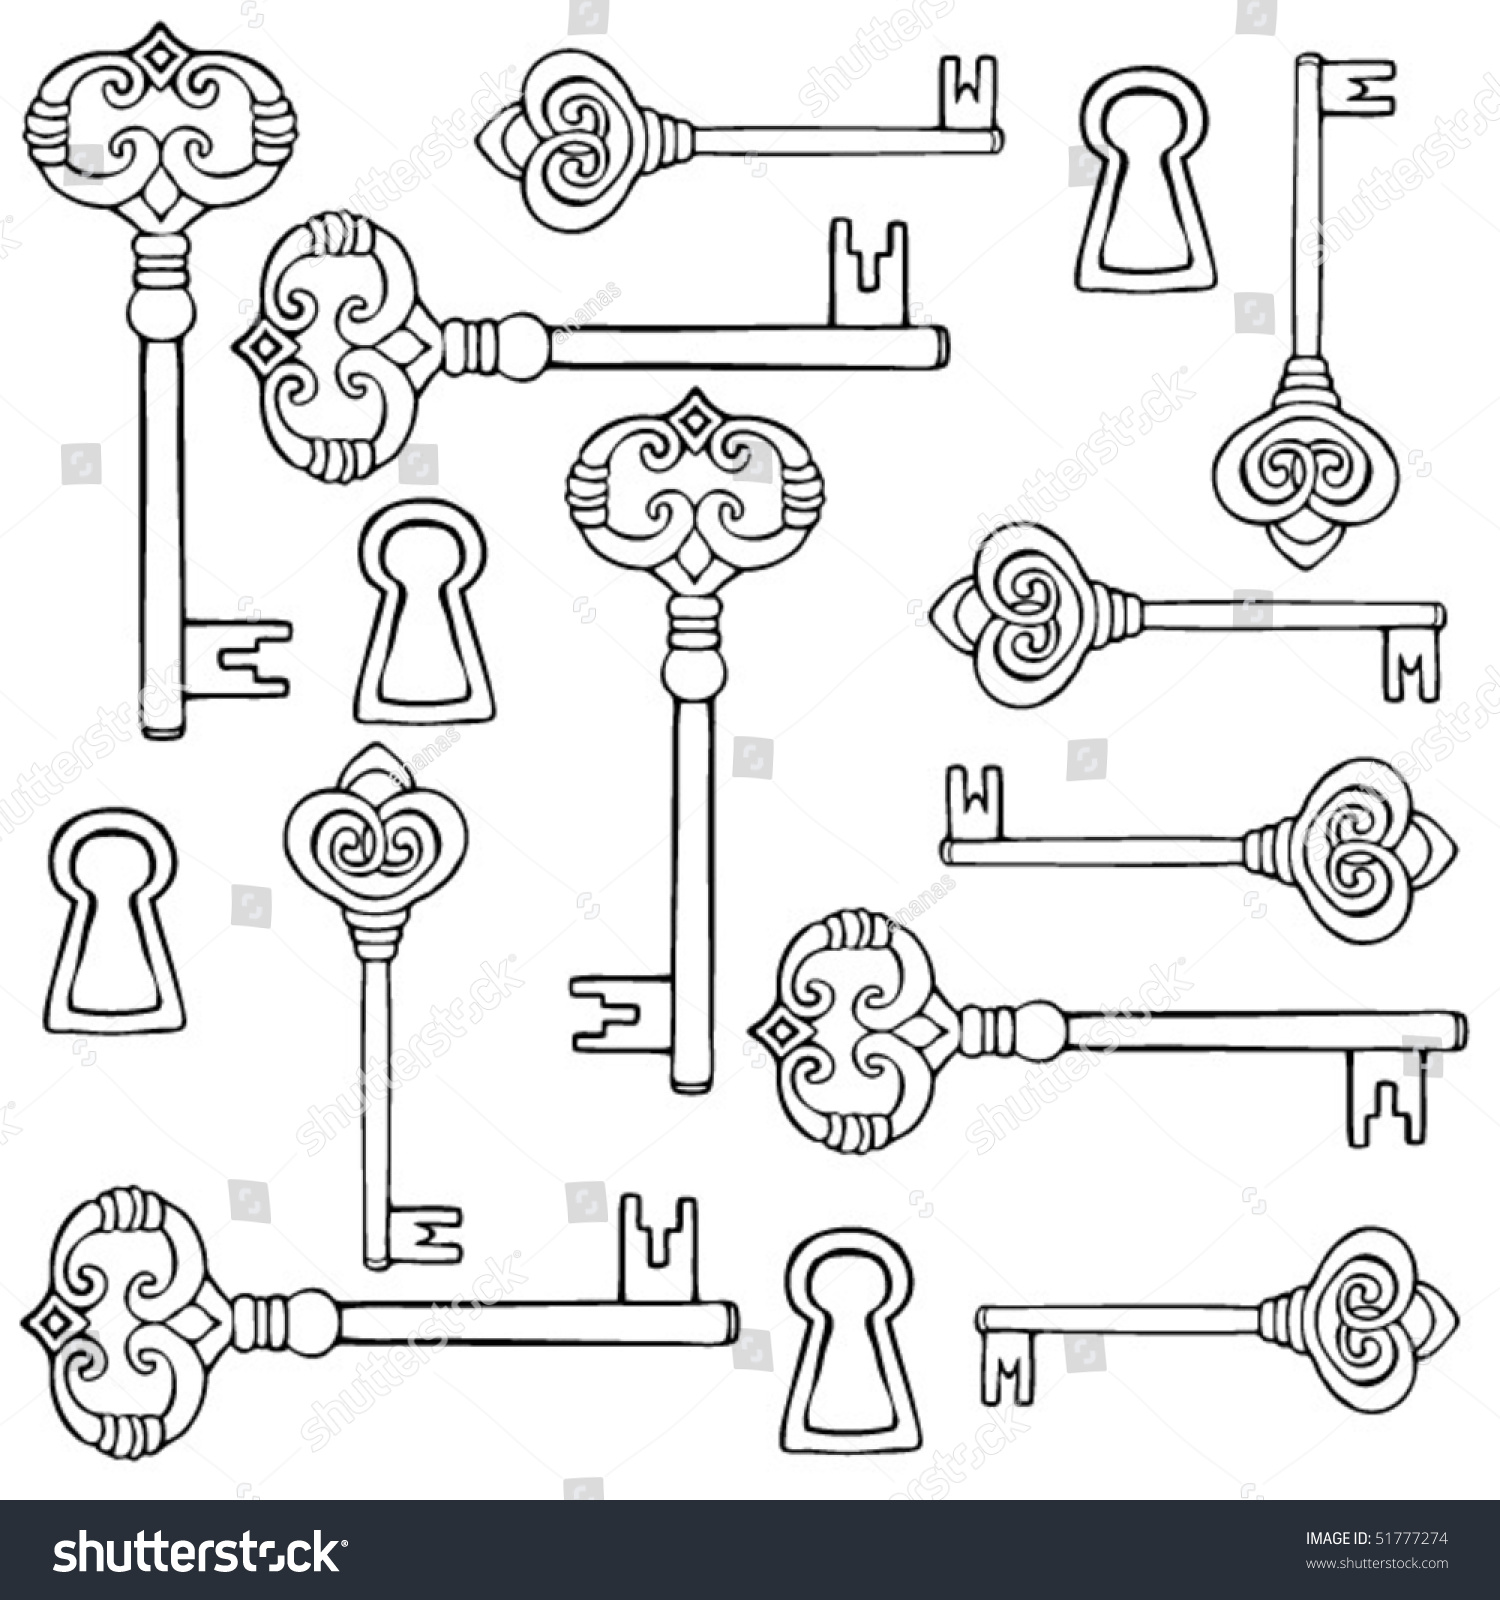 Keys Locks Drawing Stock Vector 51777274 - Shutterstock